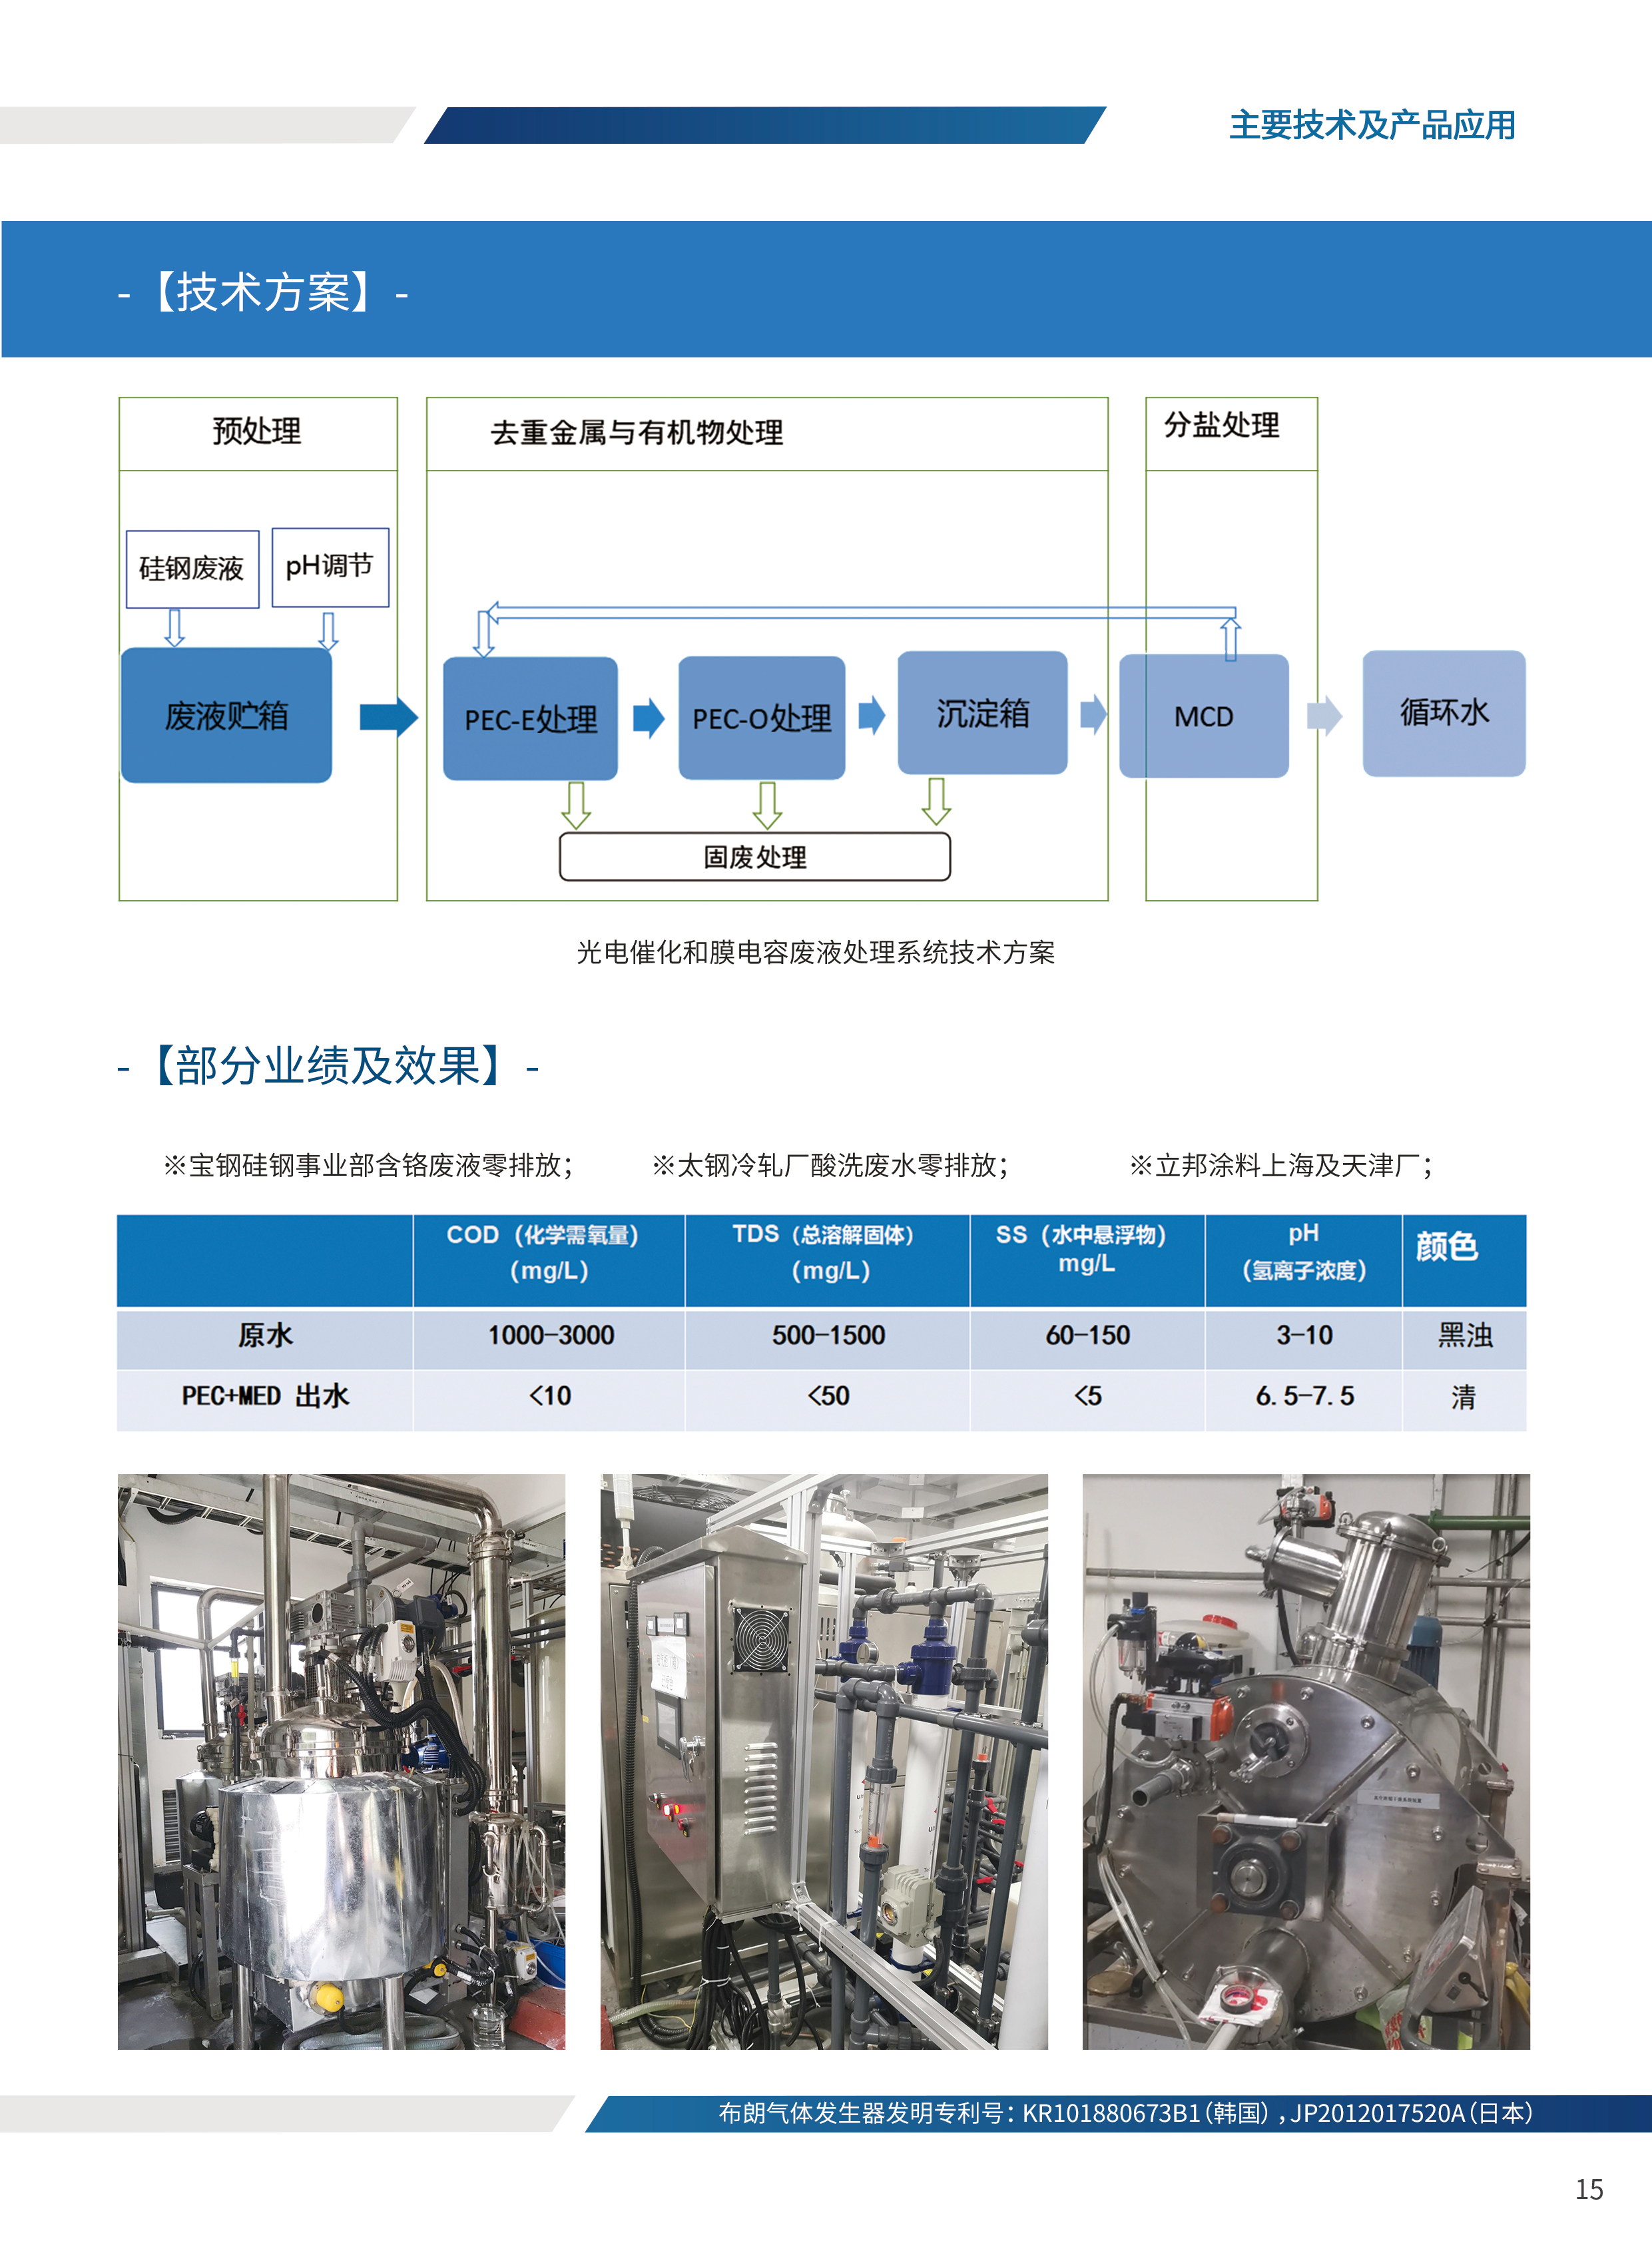 光电催化和膜电容废液处理系统